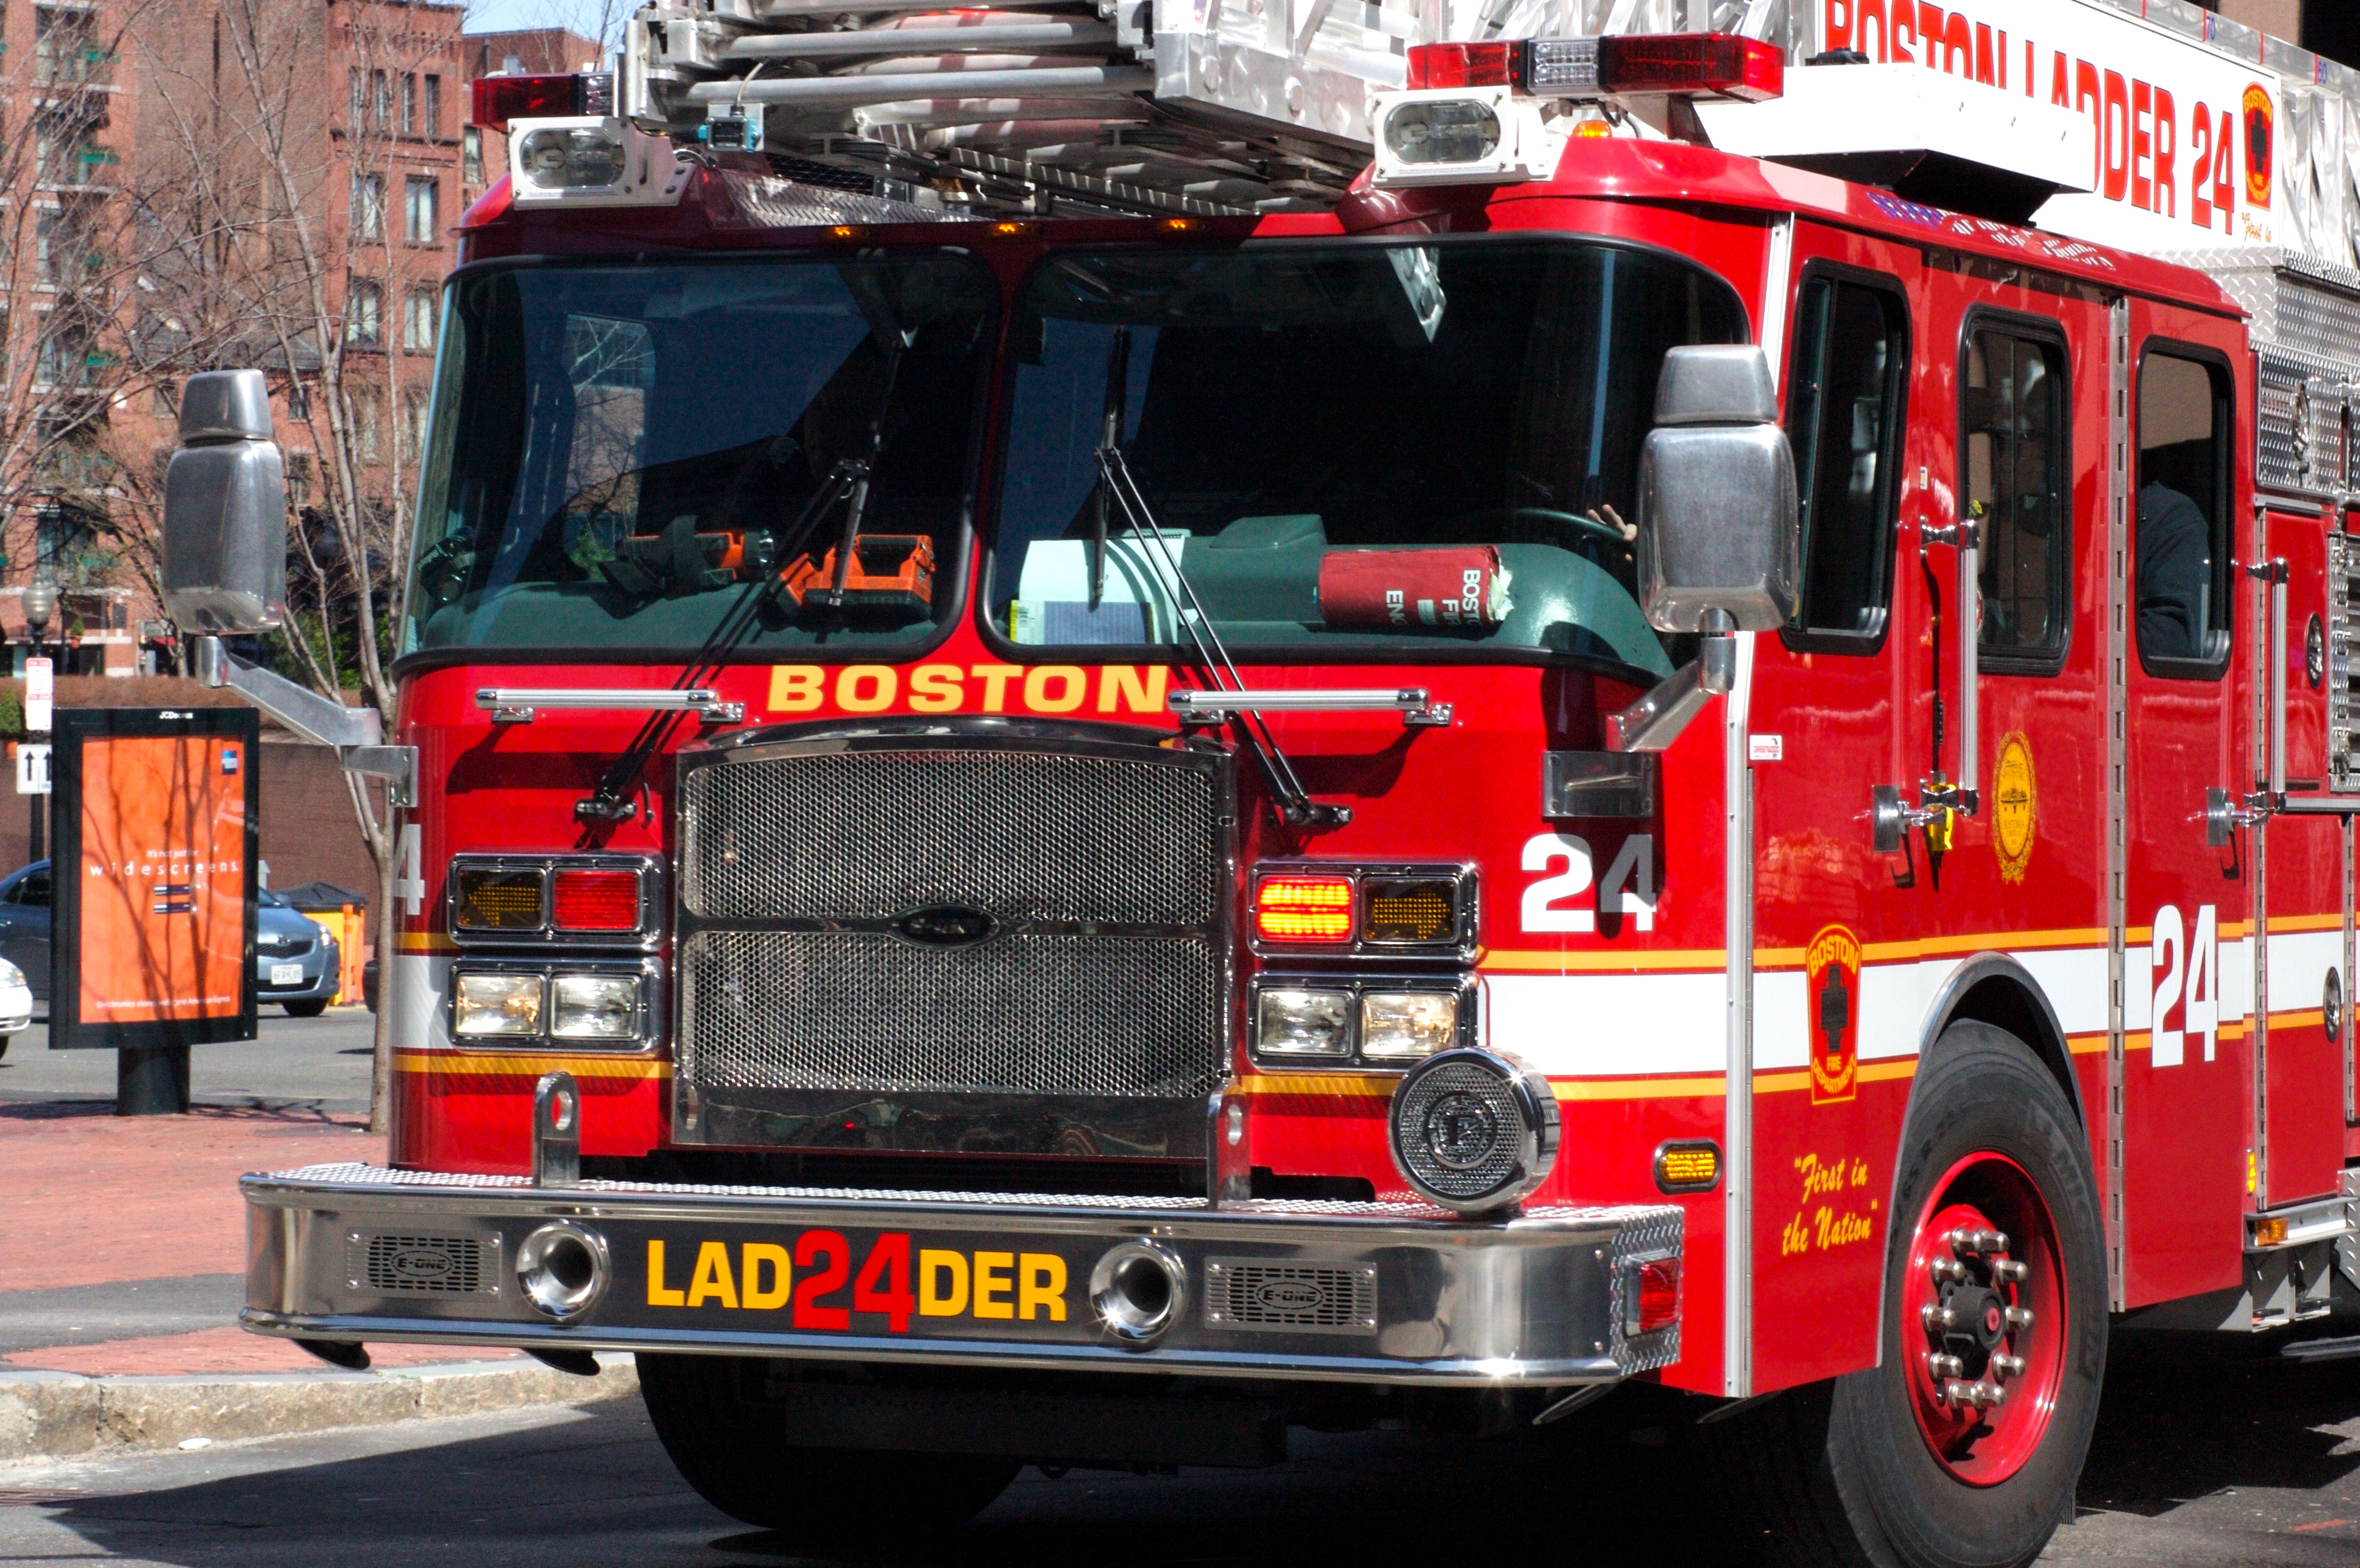 Fire truck in Boston